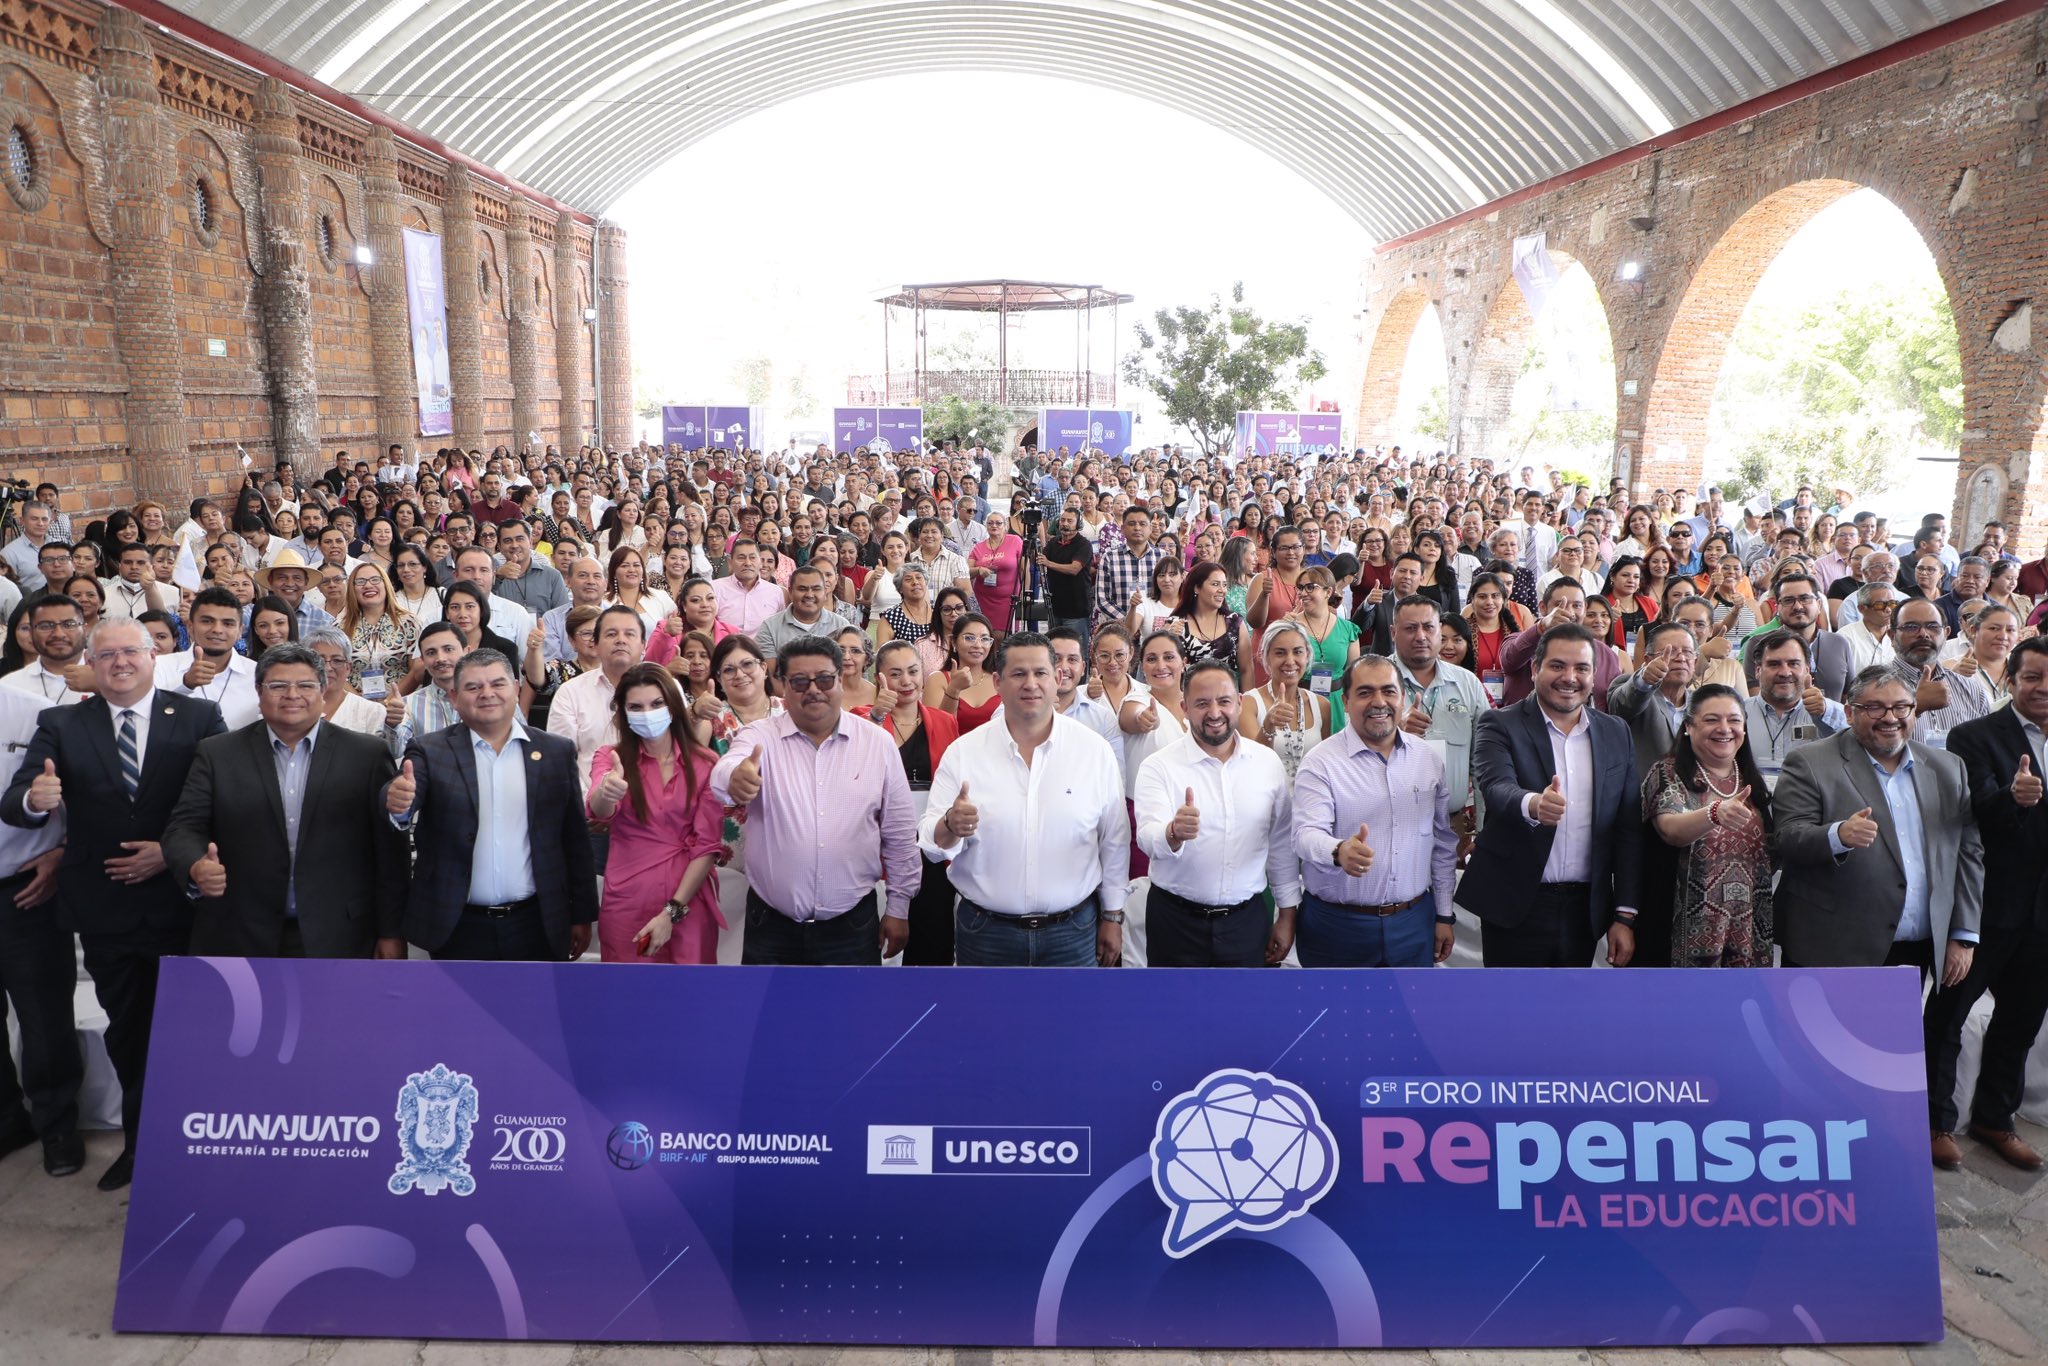 Gobernador de Guanajuato impulsa revolución educativa en 3er Foro Internacional